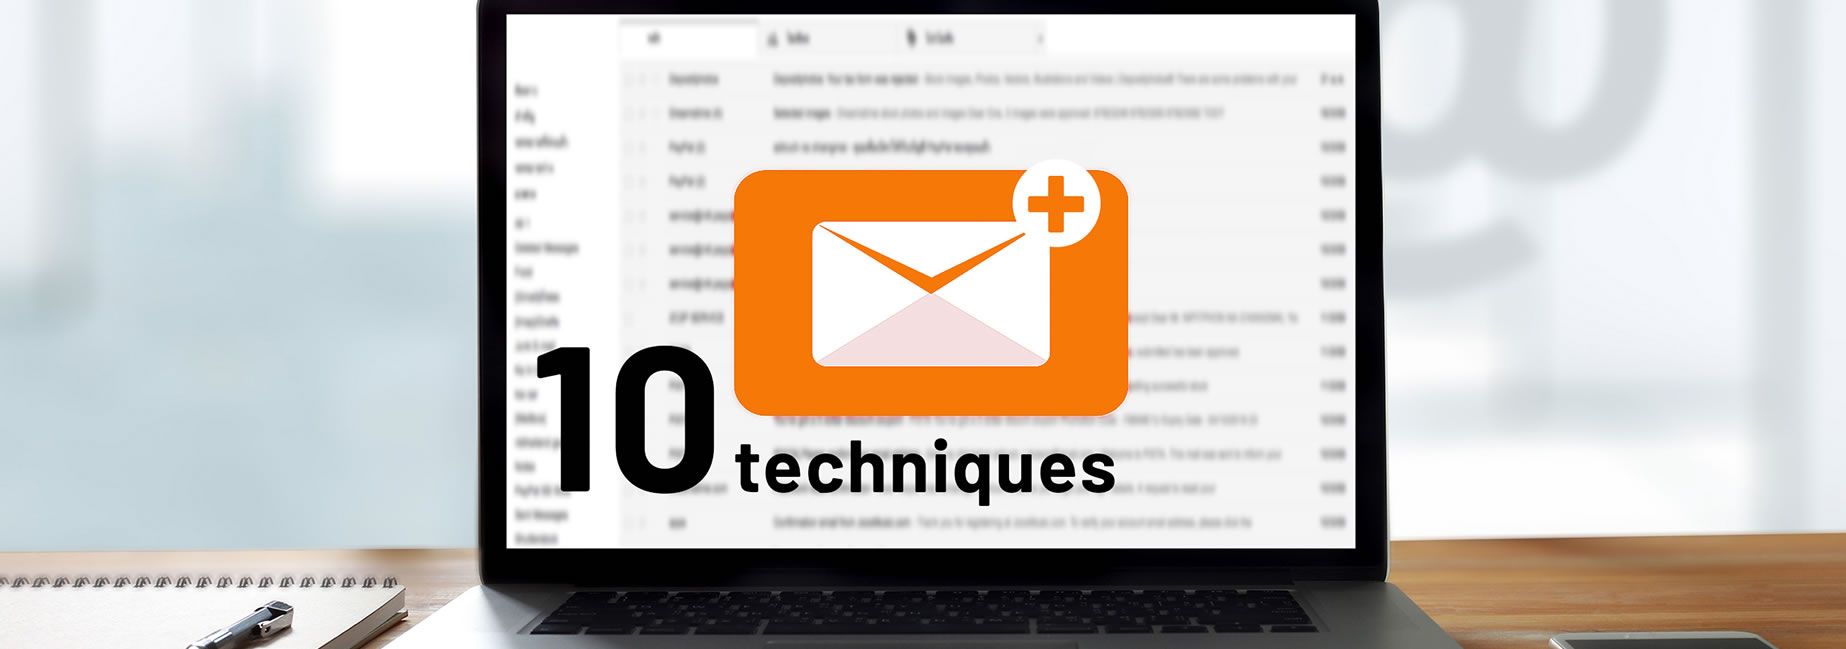 10 techniques imparables pour construire rapidement liste d'emails qualifiés